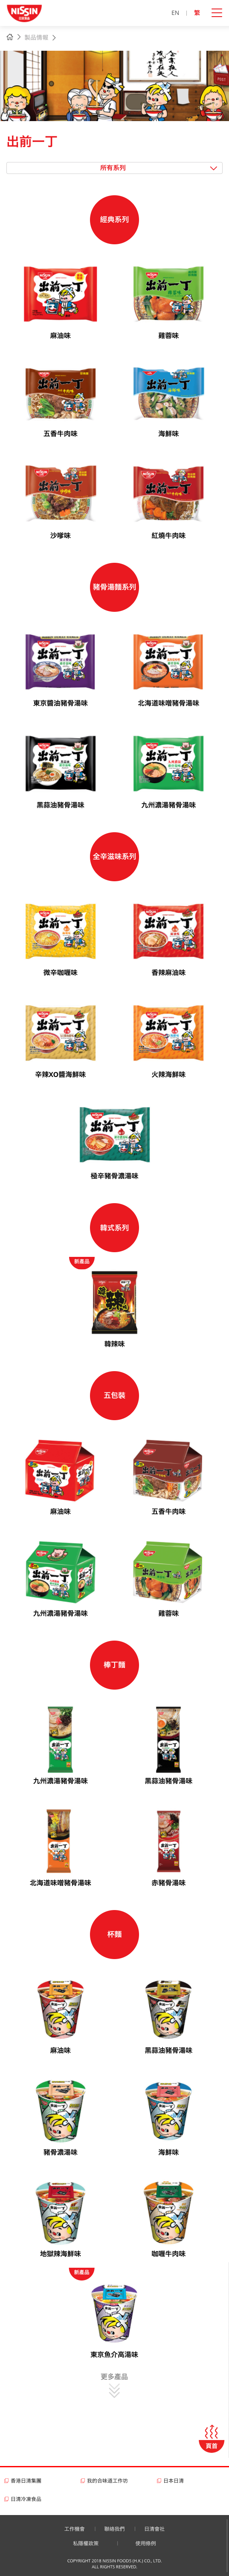 Nissin Foods HK website screenshot for tablet version 4 of 5